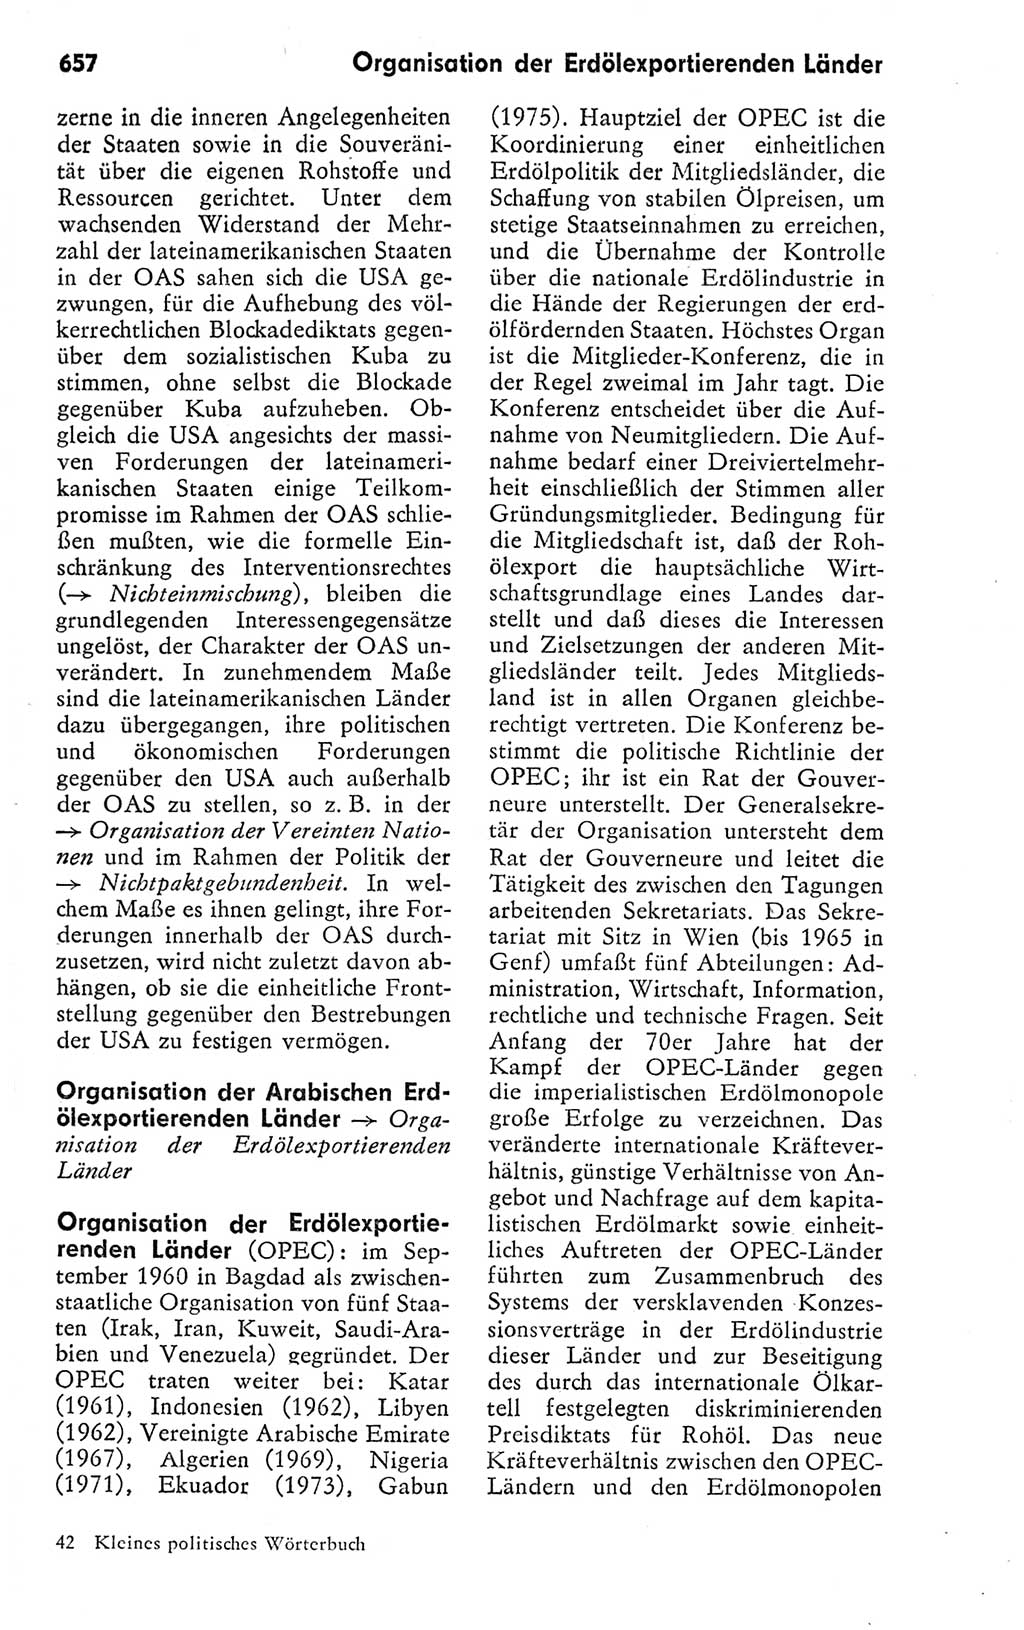 Kleines politisches Wörterbuch [Deutsche Demokratische Republik (DDR)] 1978, Seite 657 (Kl. pol. Wb. DDR 1978, S. 657)